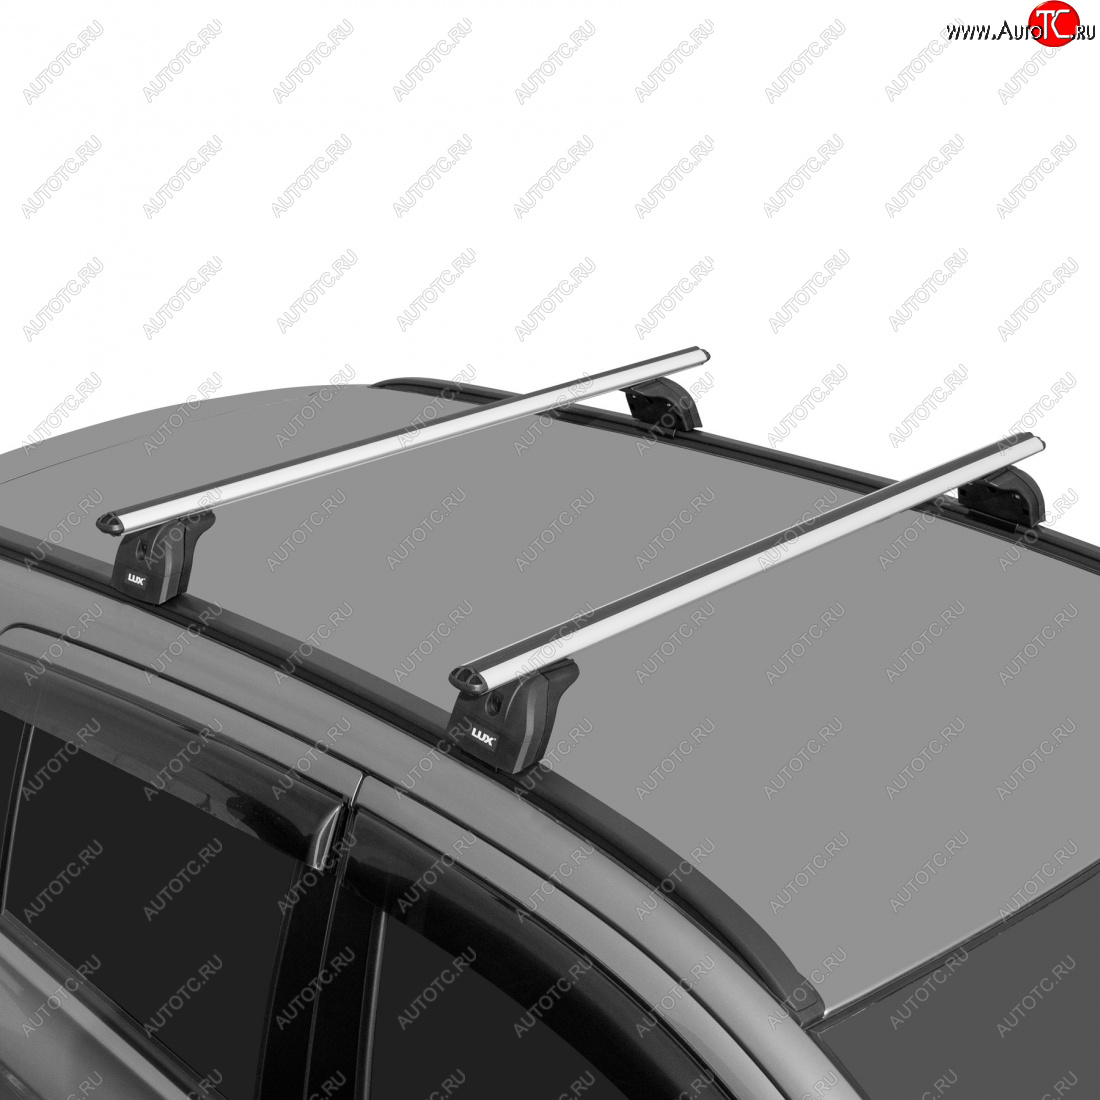 11 596 р. Багажник на крышу с низкими рейлингами сборе LUX  Volvo XC60 (2008-2017) (дуги аэро-классик 120 см, с замком, серебро)